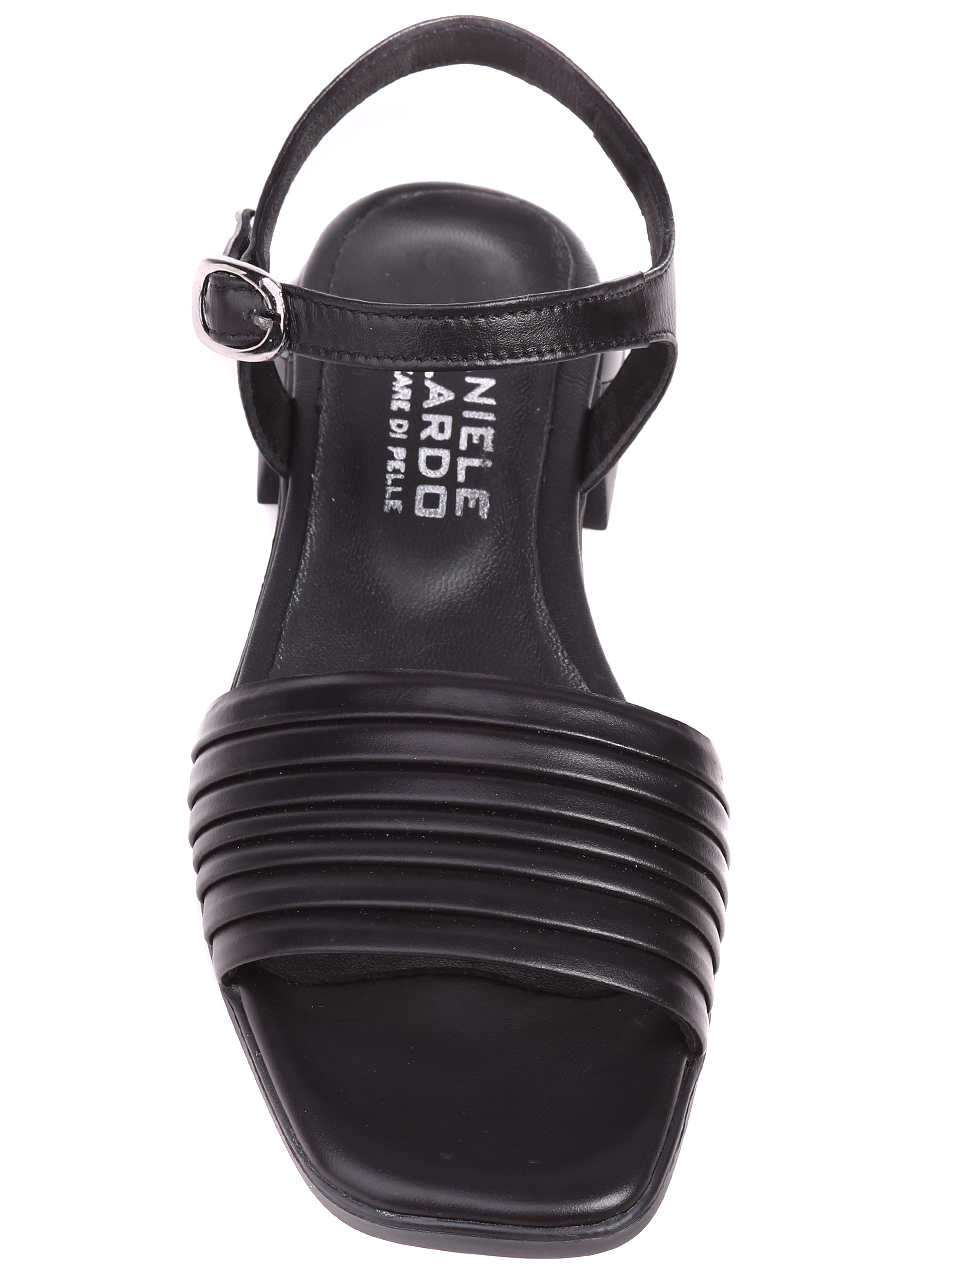 Ежедневни дамски сандали от естествена кожа 4AT-22352 black